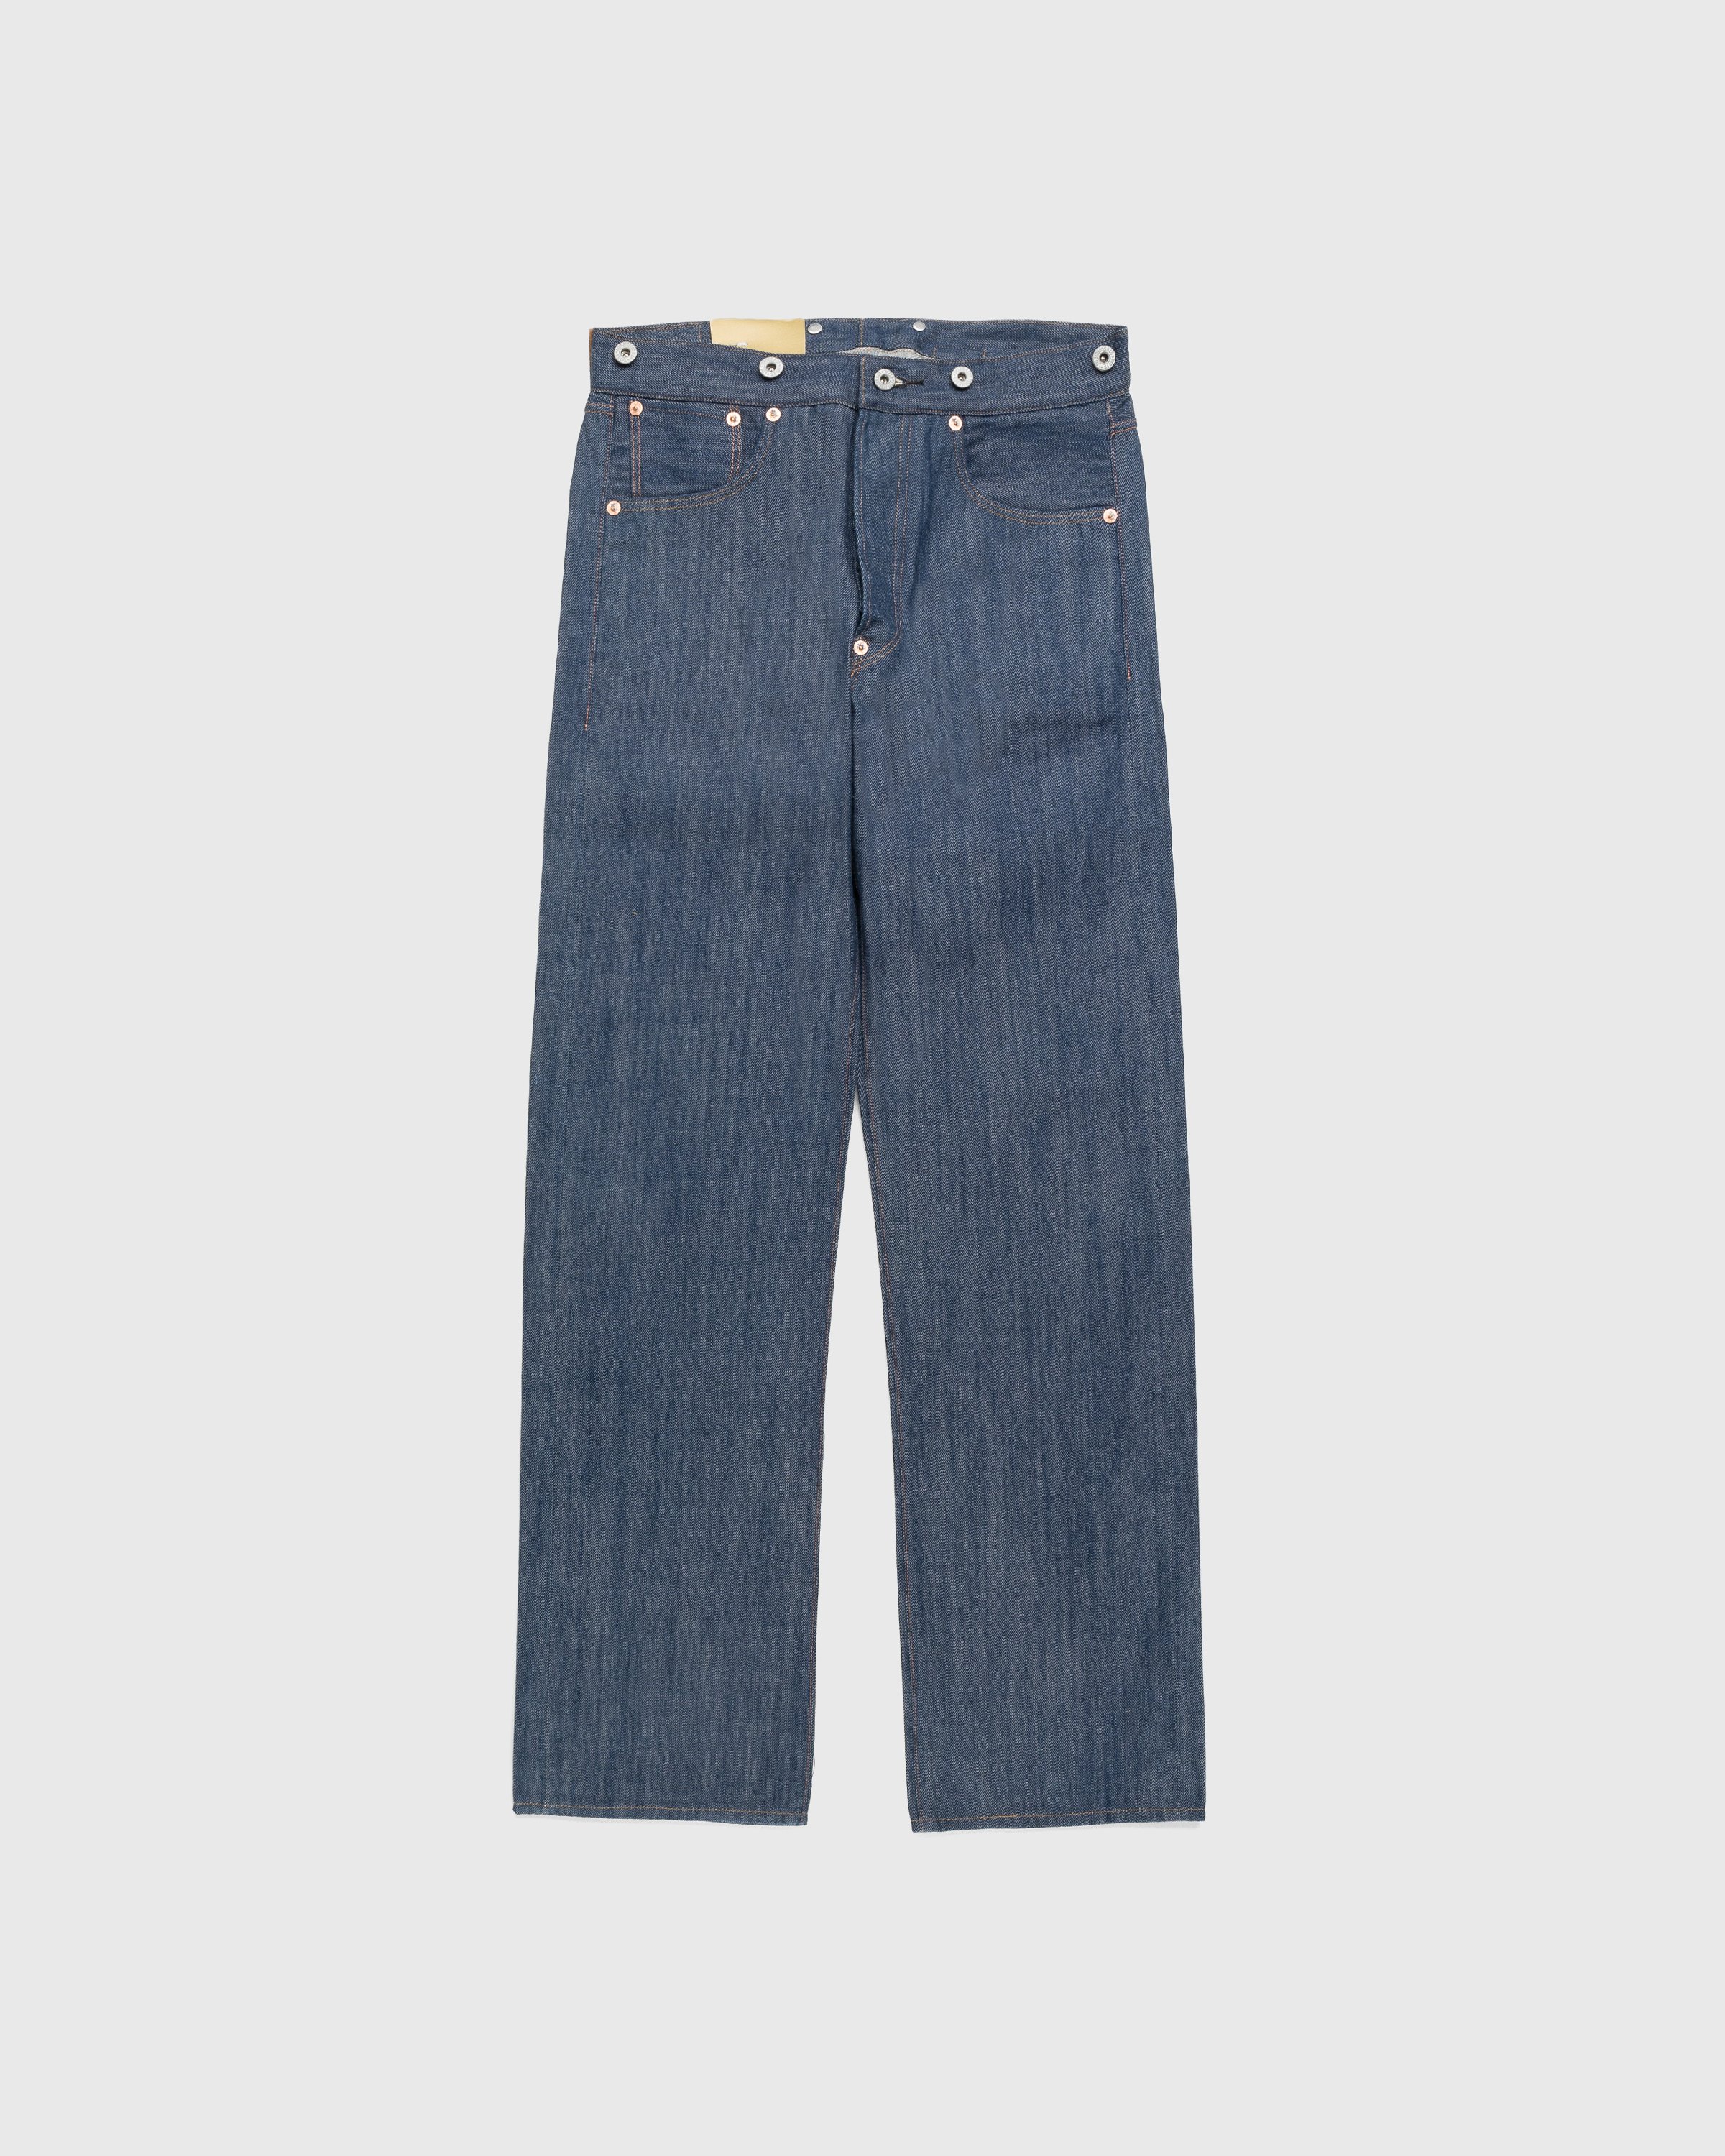 Levi's - 1901 501 Jeans Dark Indigo Flat Finish - Clothing - Blue - Image 1